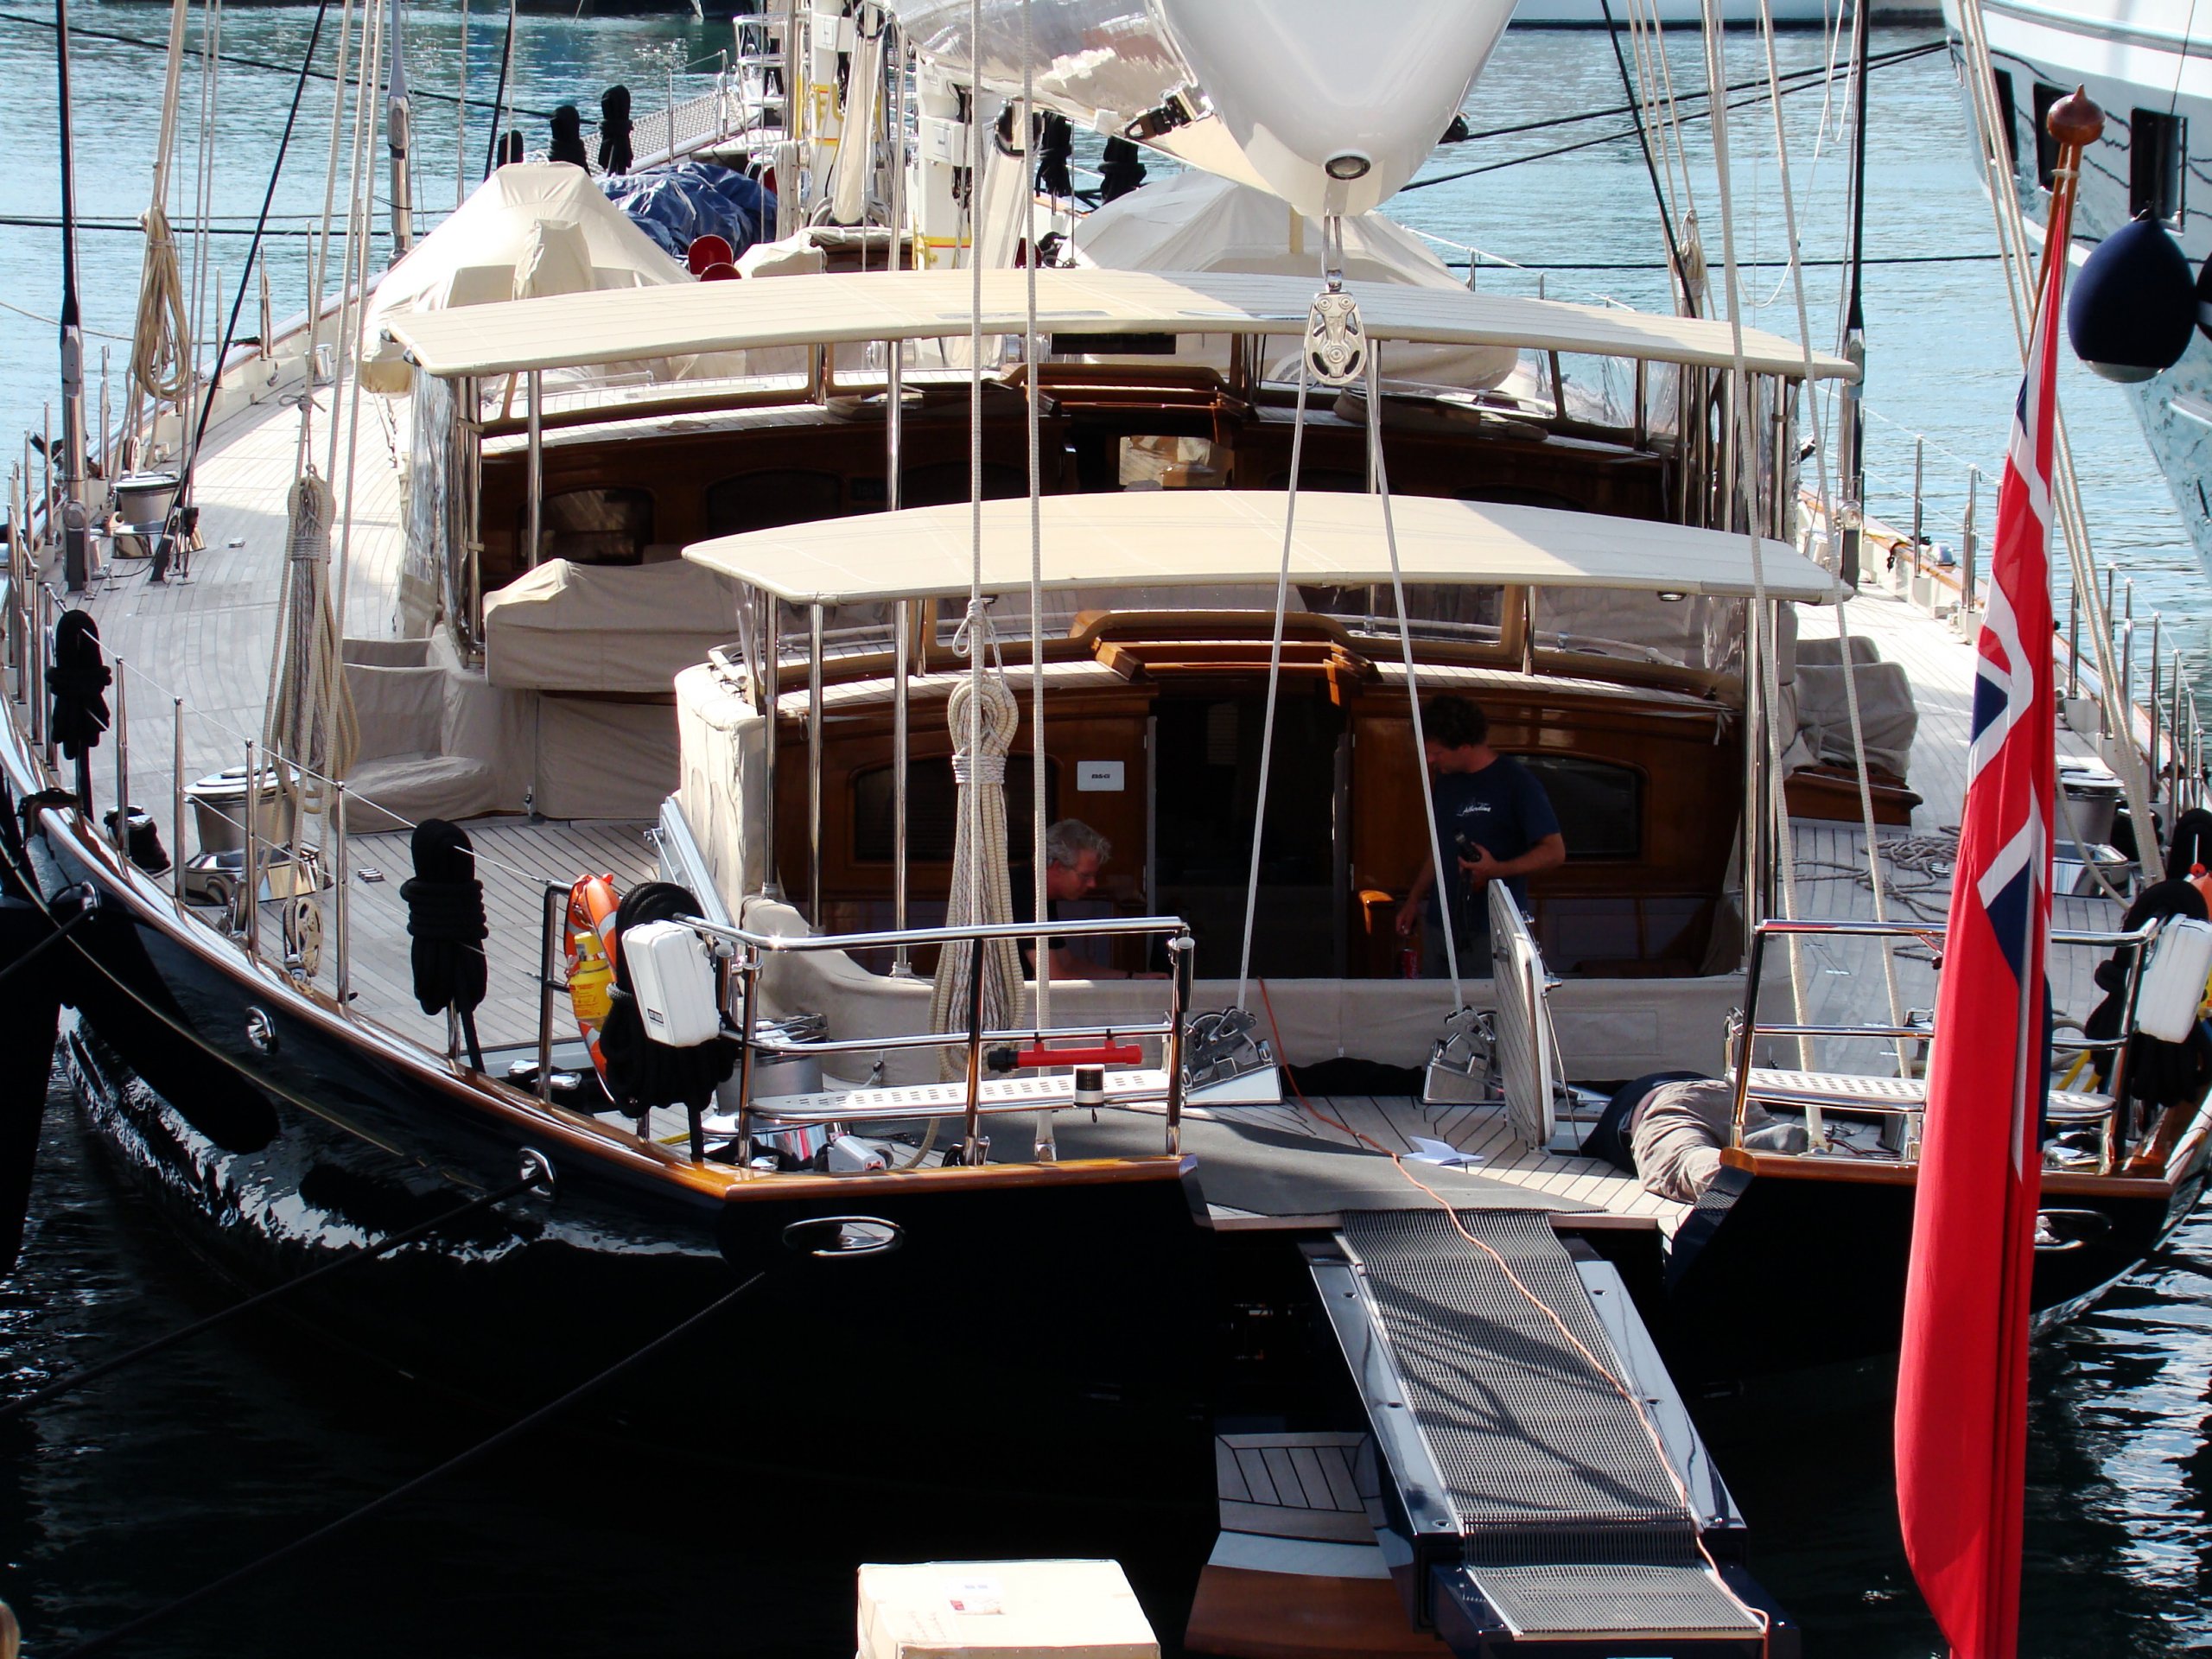 Segelyacht Athos • Holland Jachtbouw • 2010 • Eigentümer Geert Pepping